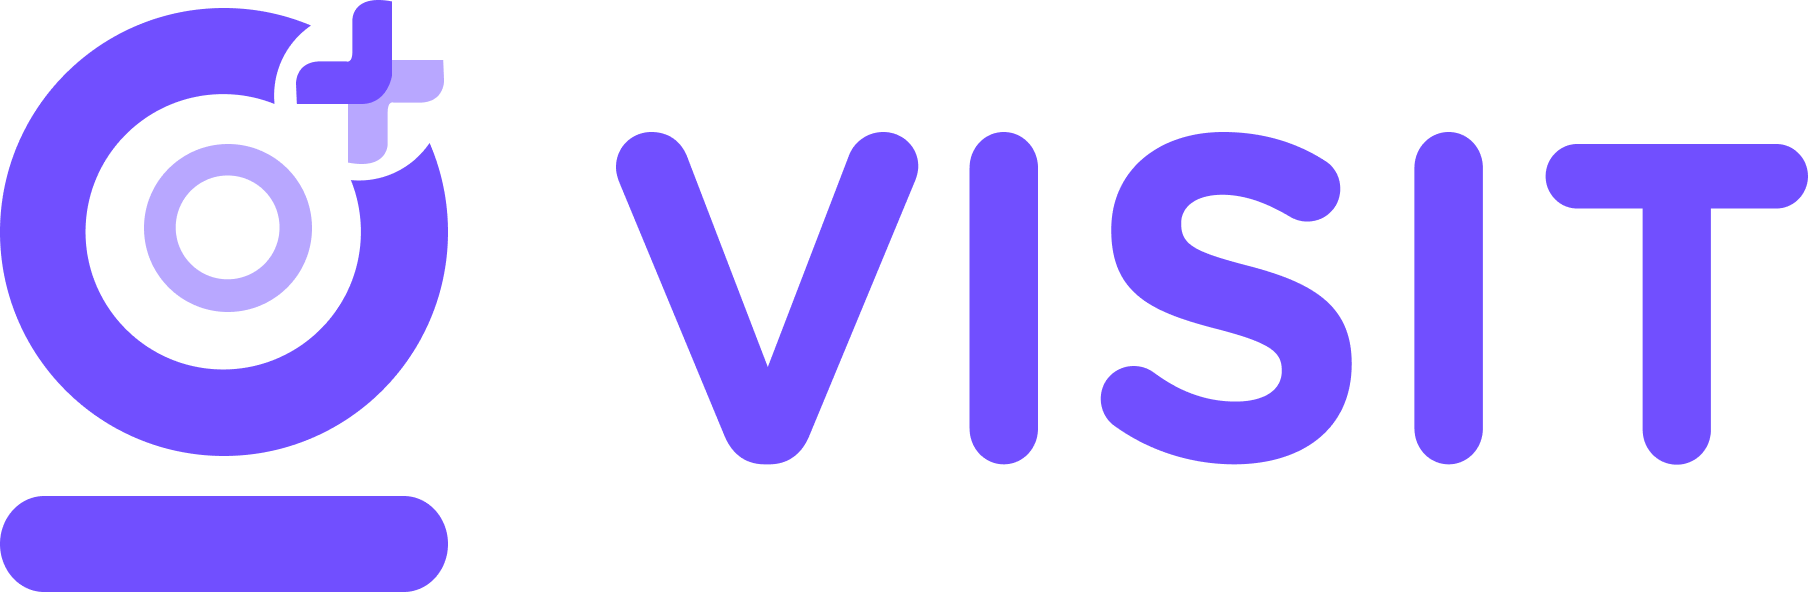 visit logo